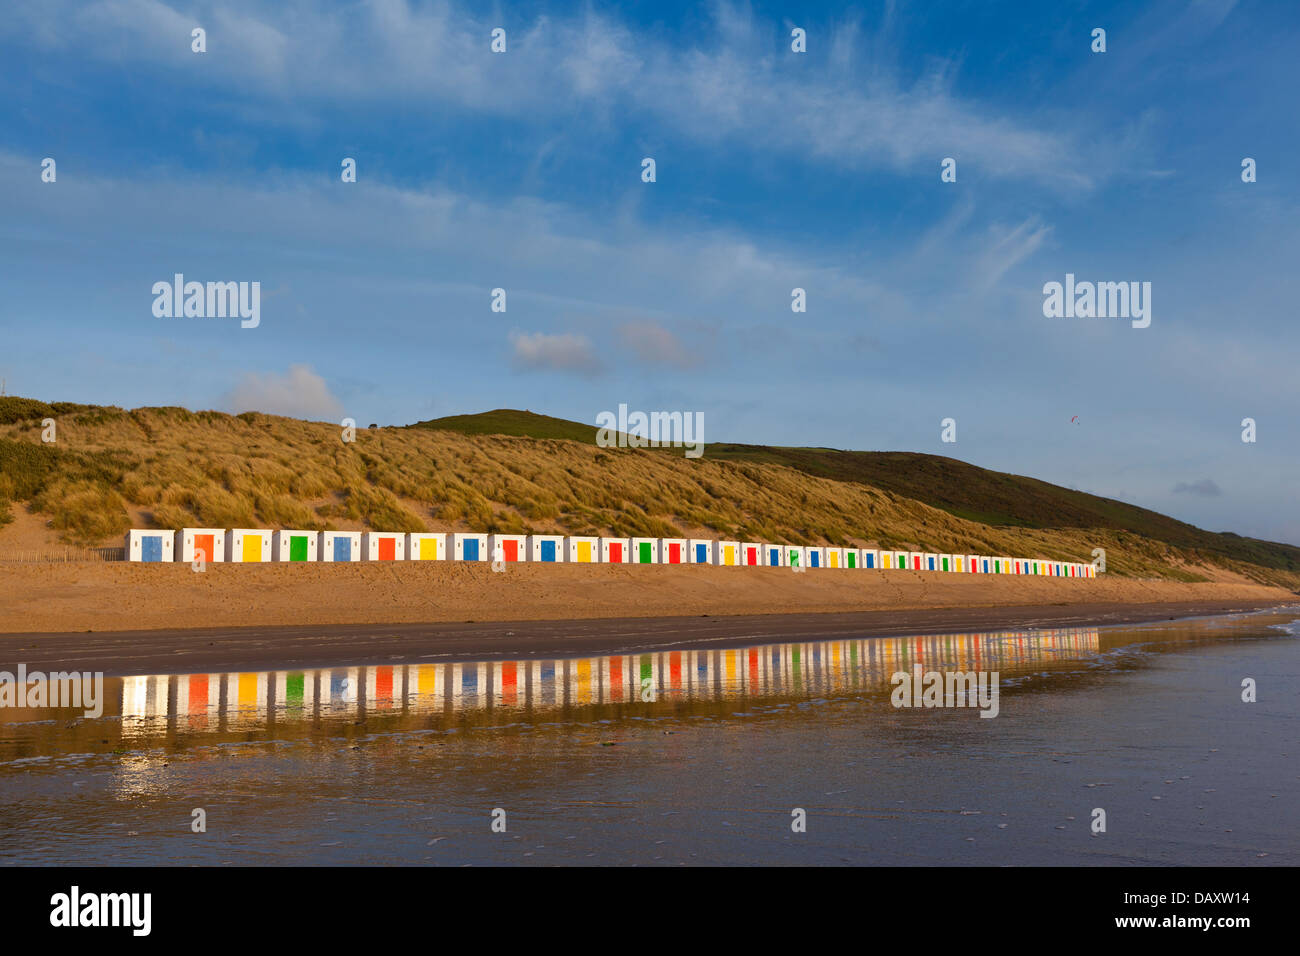 Una larga línea de cabañas de playa blanca, con puertas de colores, de pie delante de dunas con reflejos en la arena mojada. Foto de stock